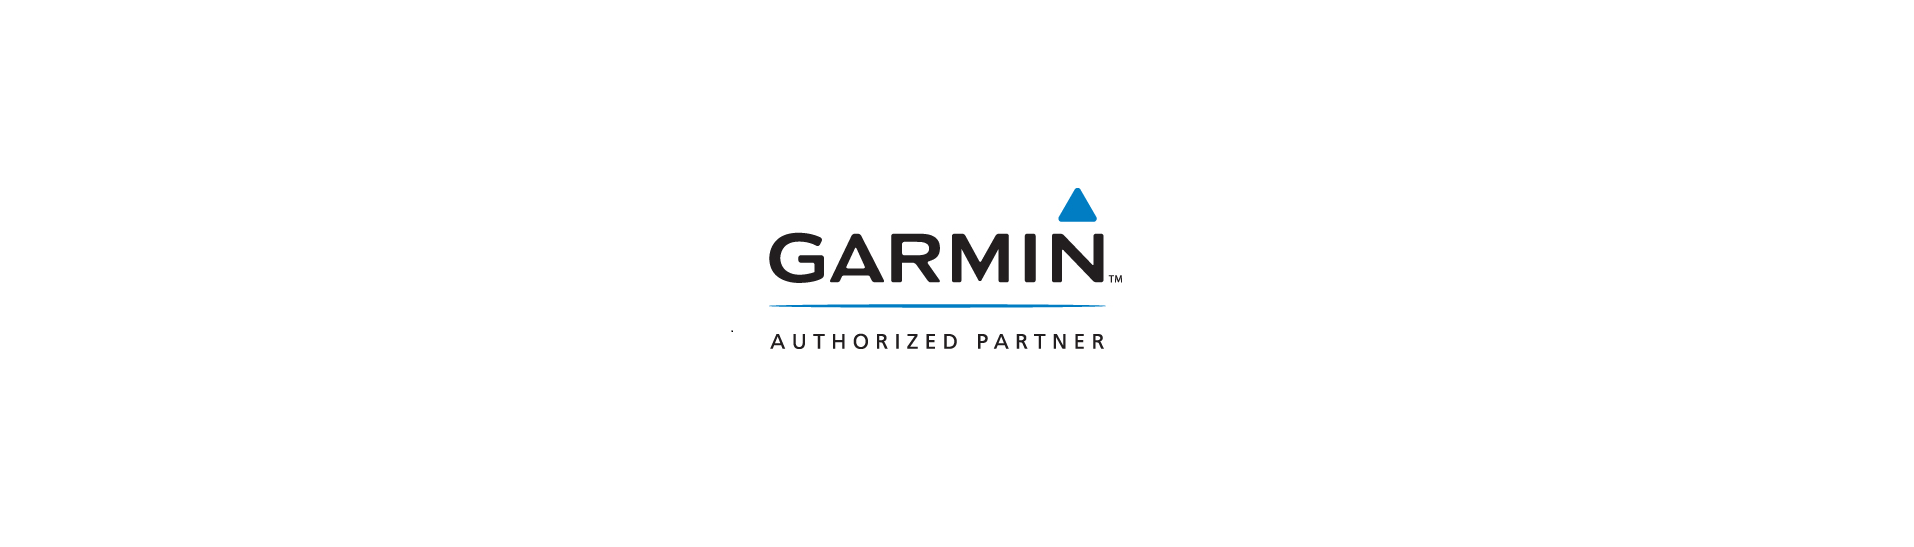 Garmin Logo PNG - 178478